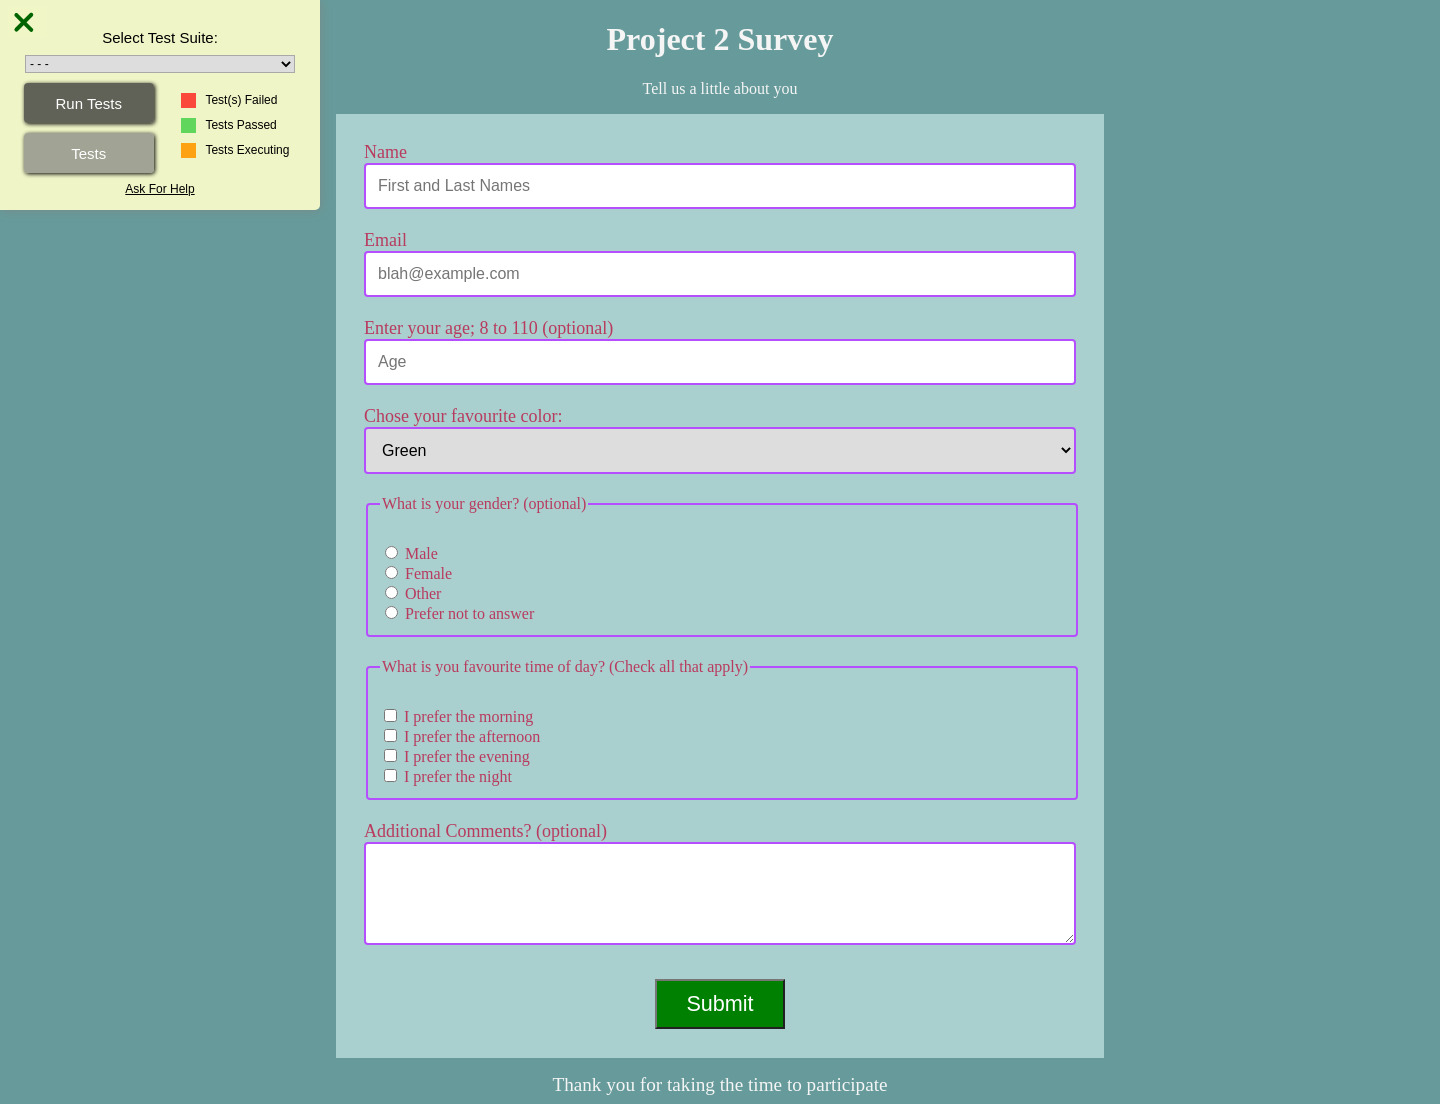 Project 2 - Build A Survey Form